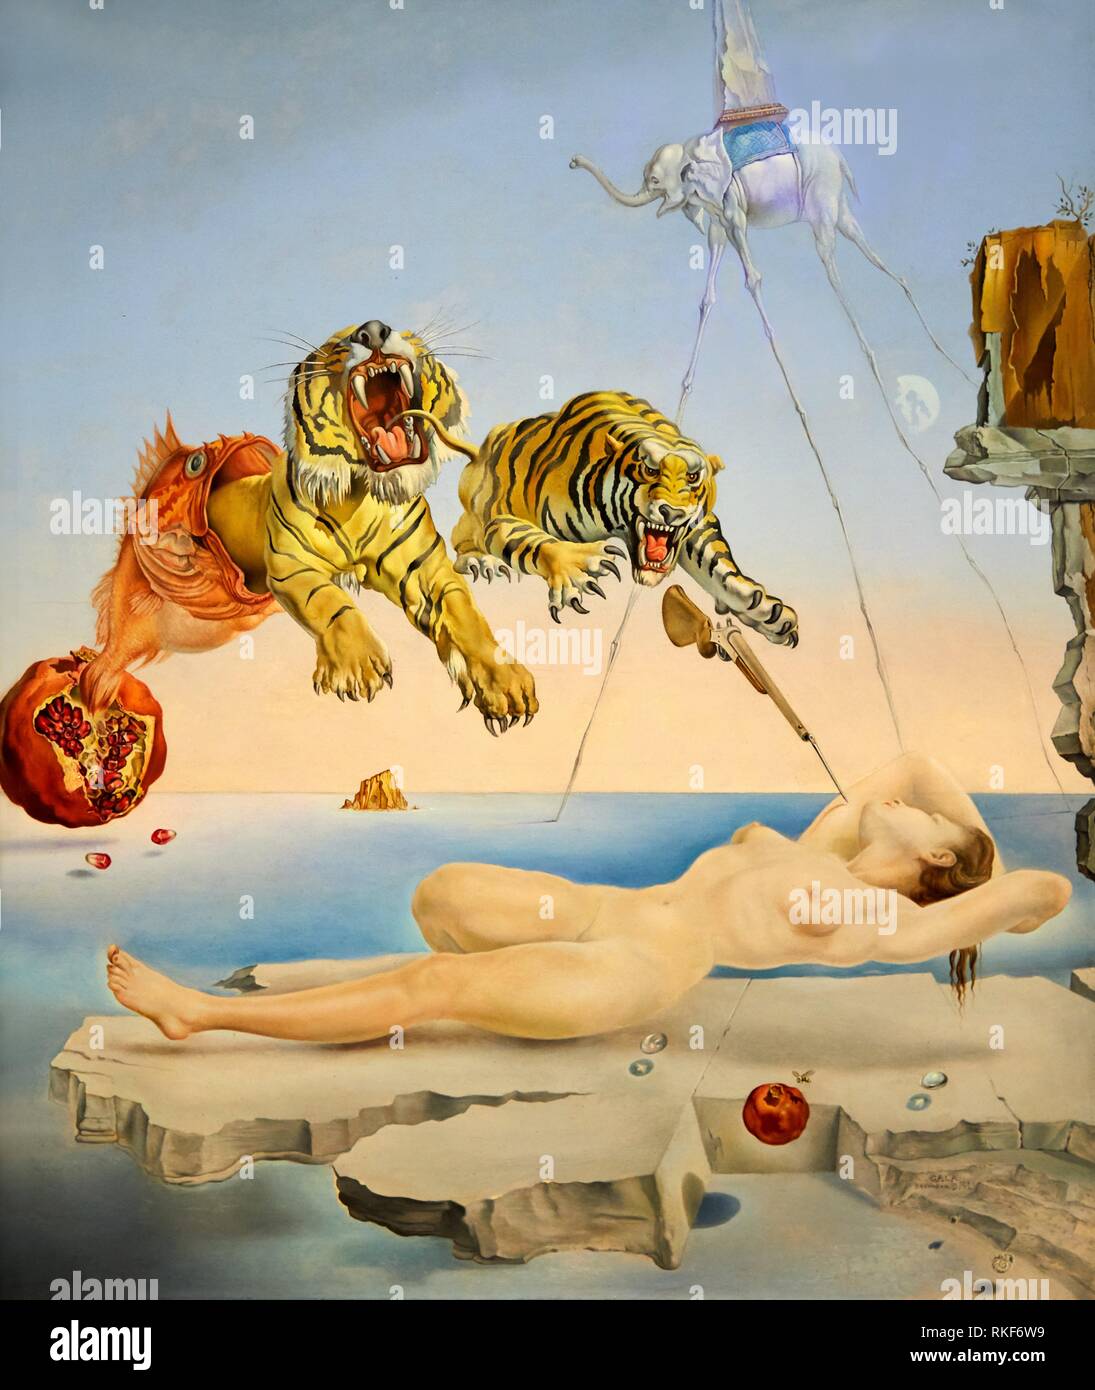 ''' Eine Sekunde vor dem Erwachen aus einem Traum durch den Flug einer Biene um einen Granatapfel'', 1944, Salvador Dalí Ausstellung ''Gala provoziert Stockfoto